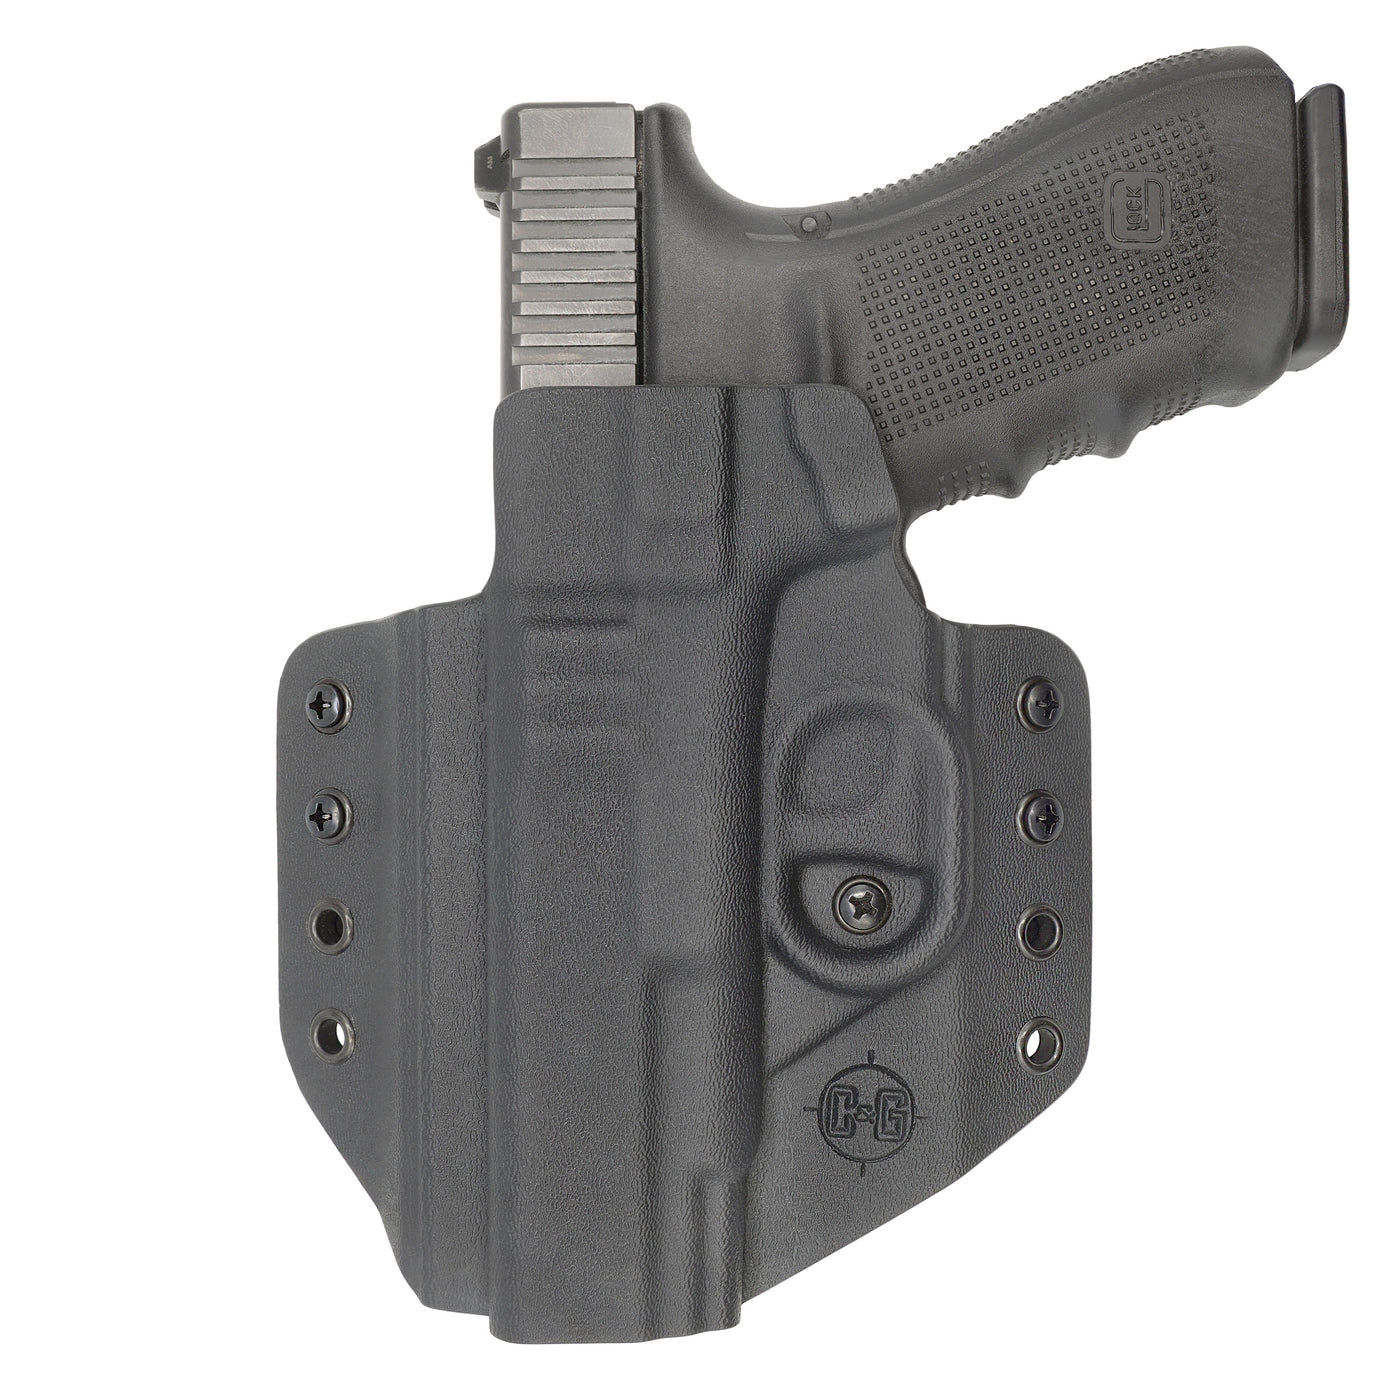 C&G Holsters custom OWB covert Glock 20/21 in holstered position LEFT HAND